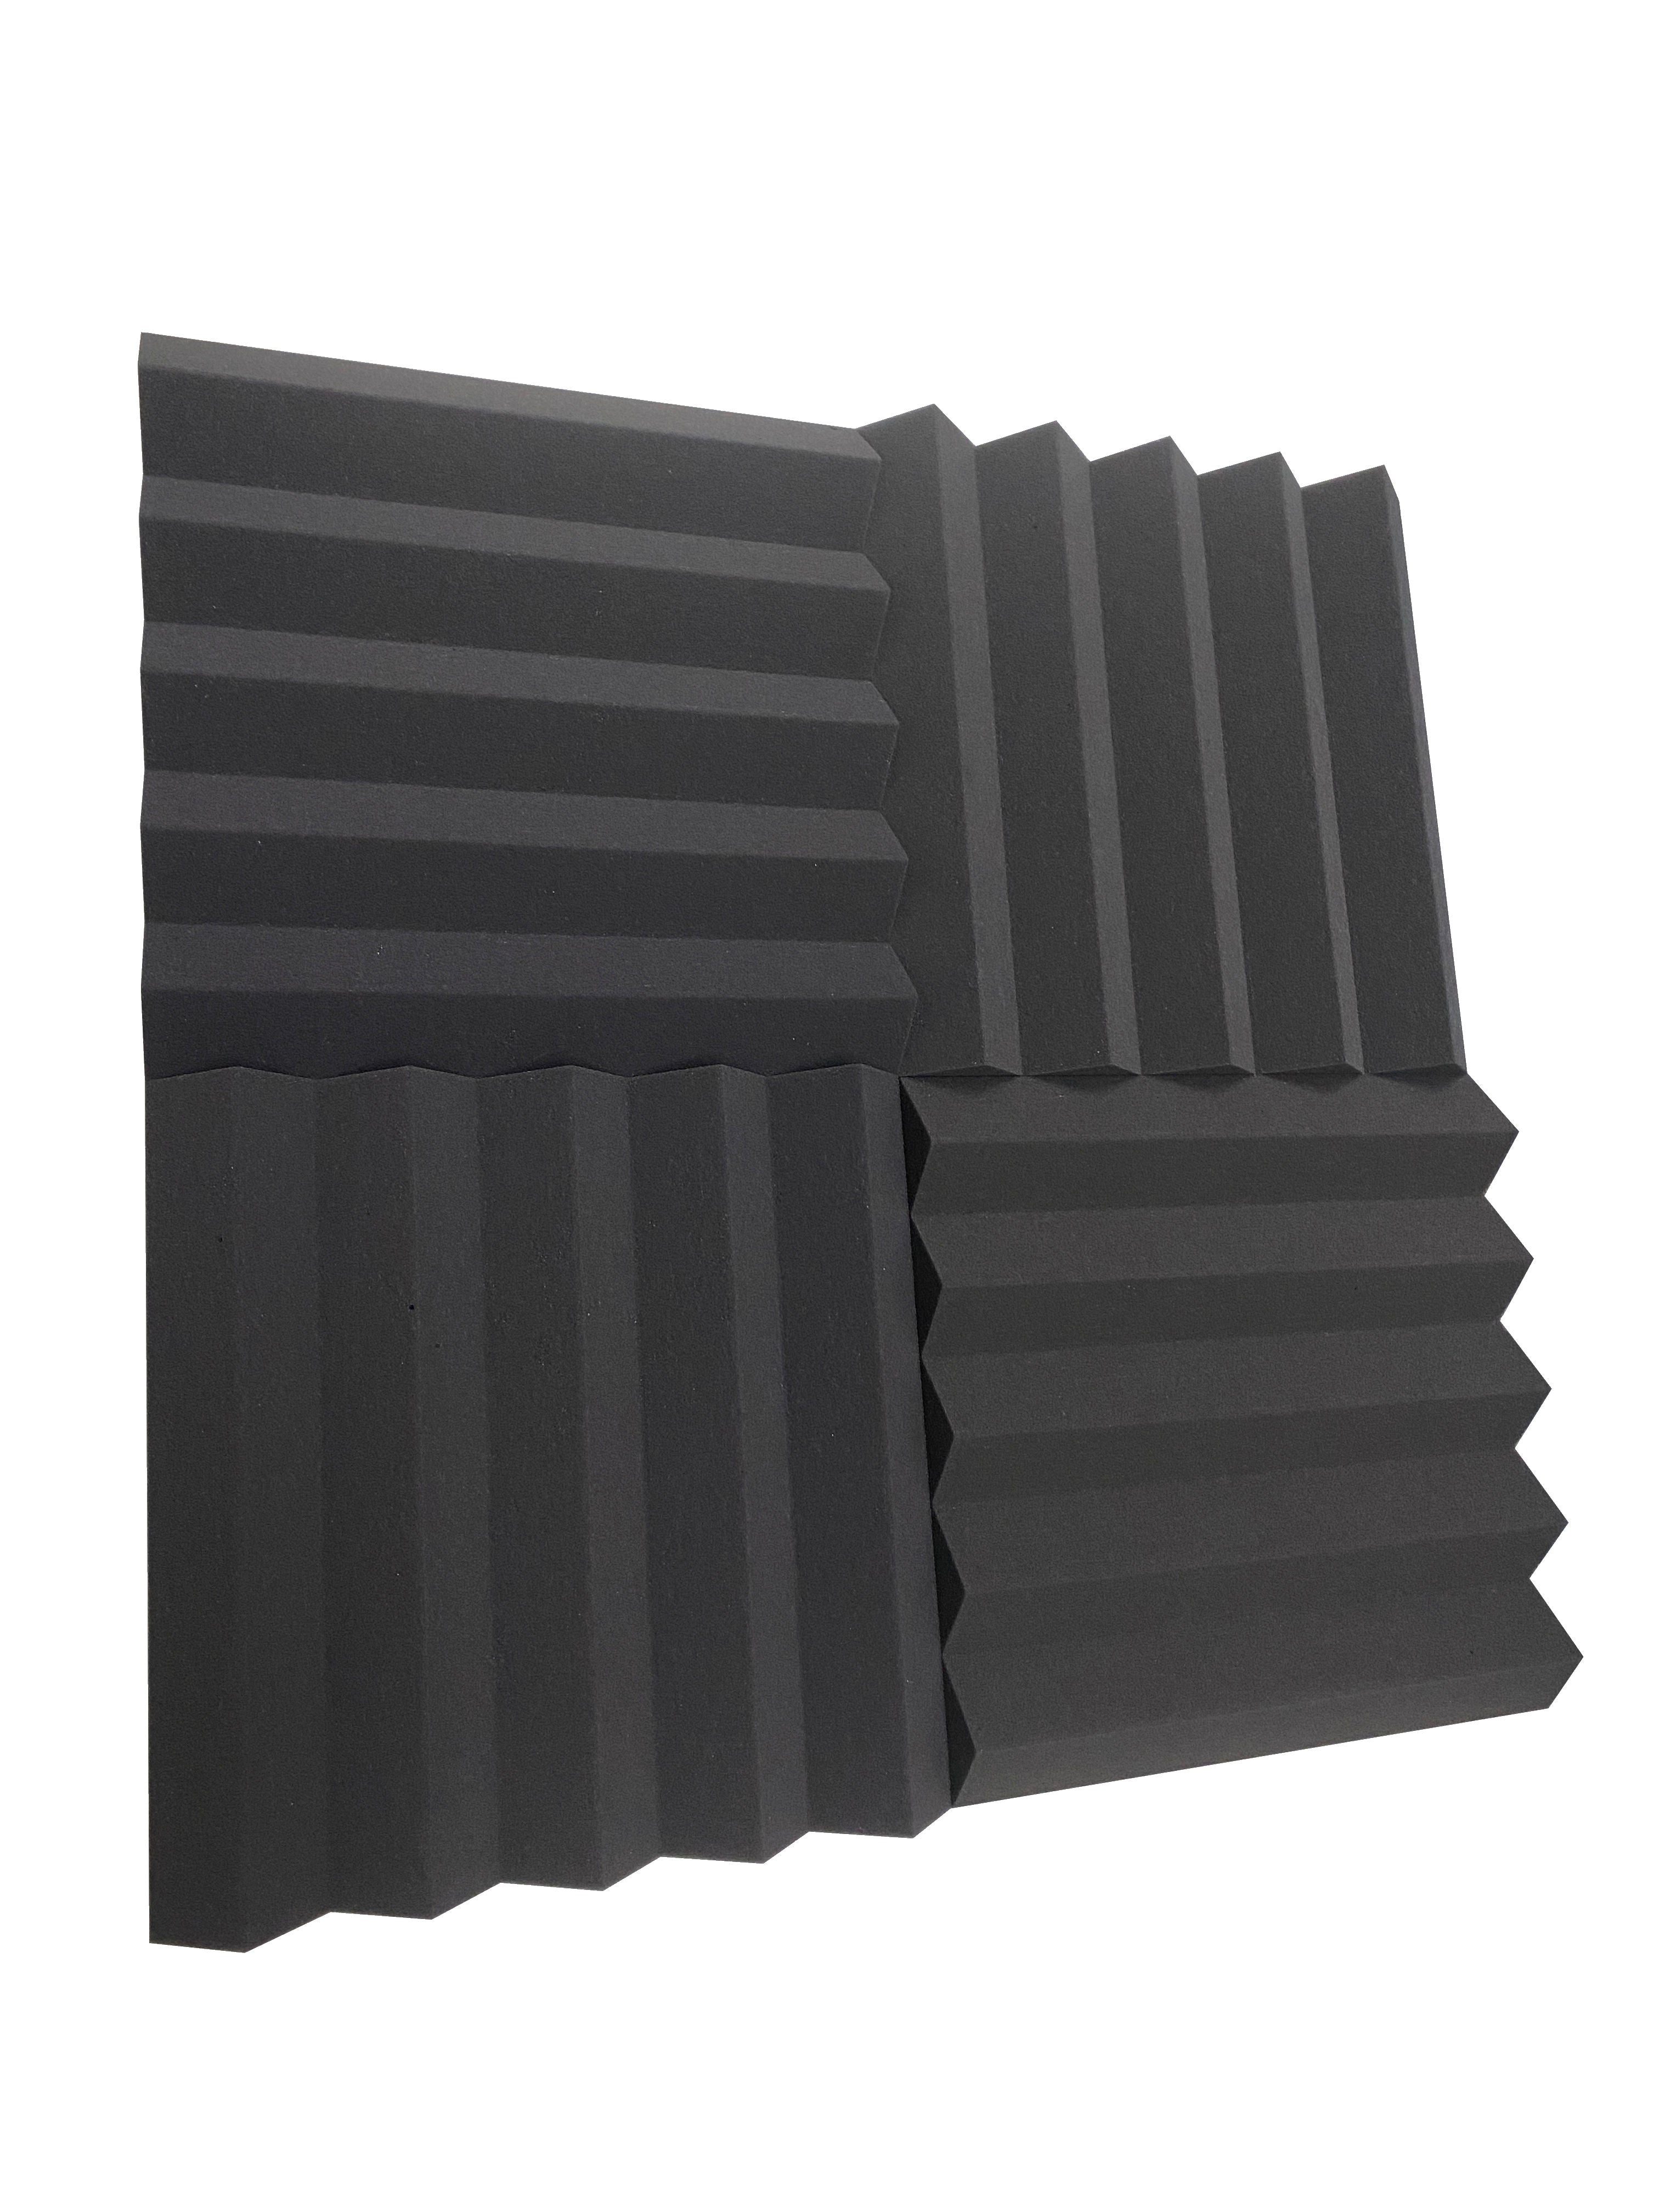 Kaufen dunkelgrau Wedge PRO 15&quot; Acoustic Studio Foam Tile Pack - 24 Tiles, 3.48qm Coverage